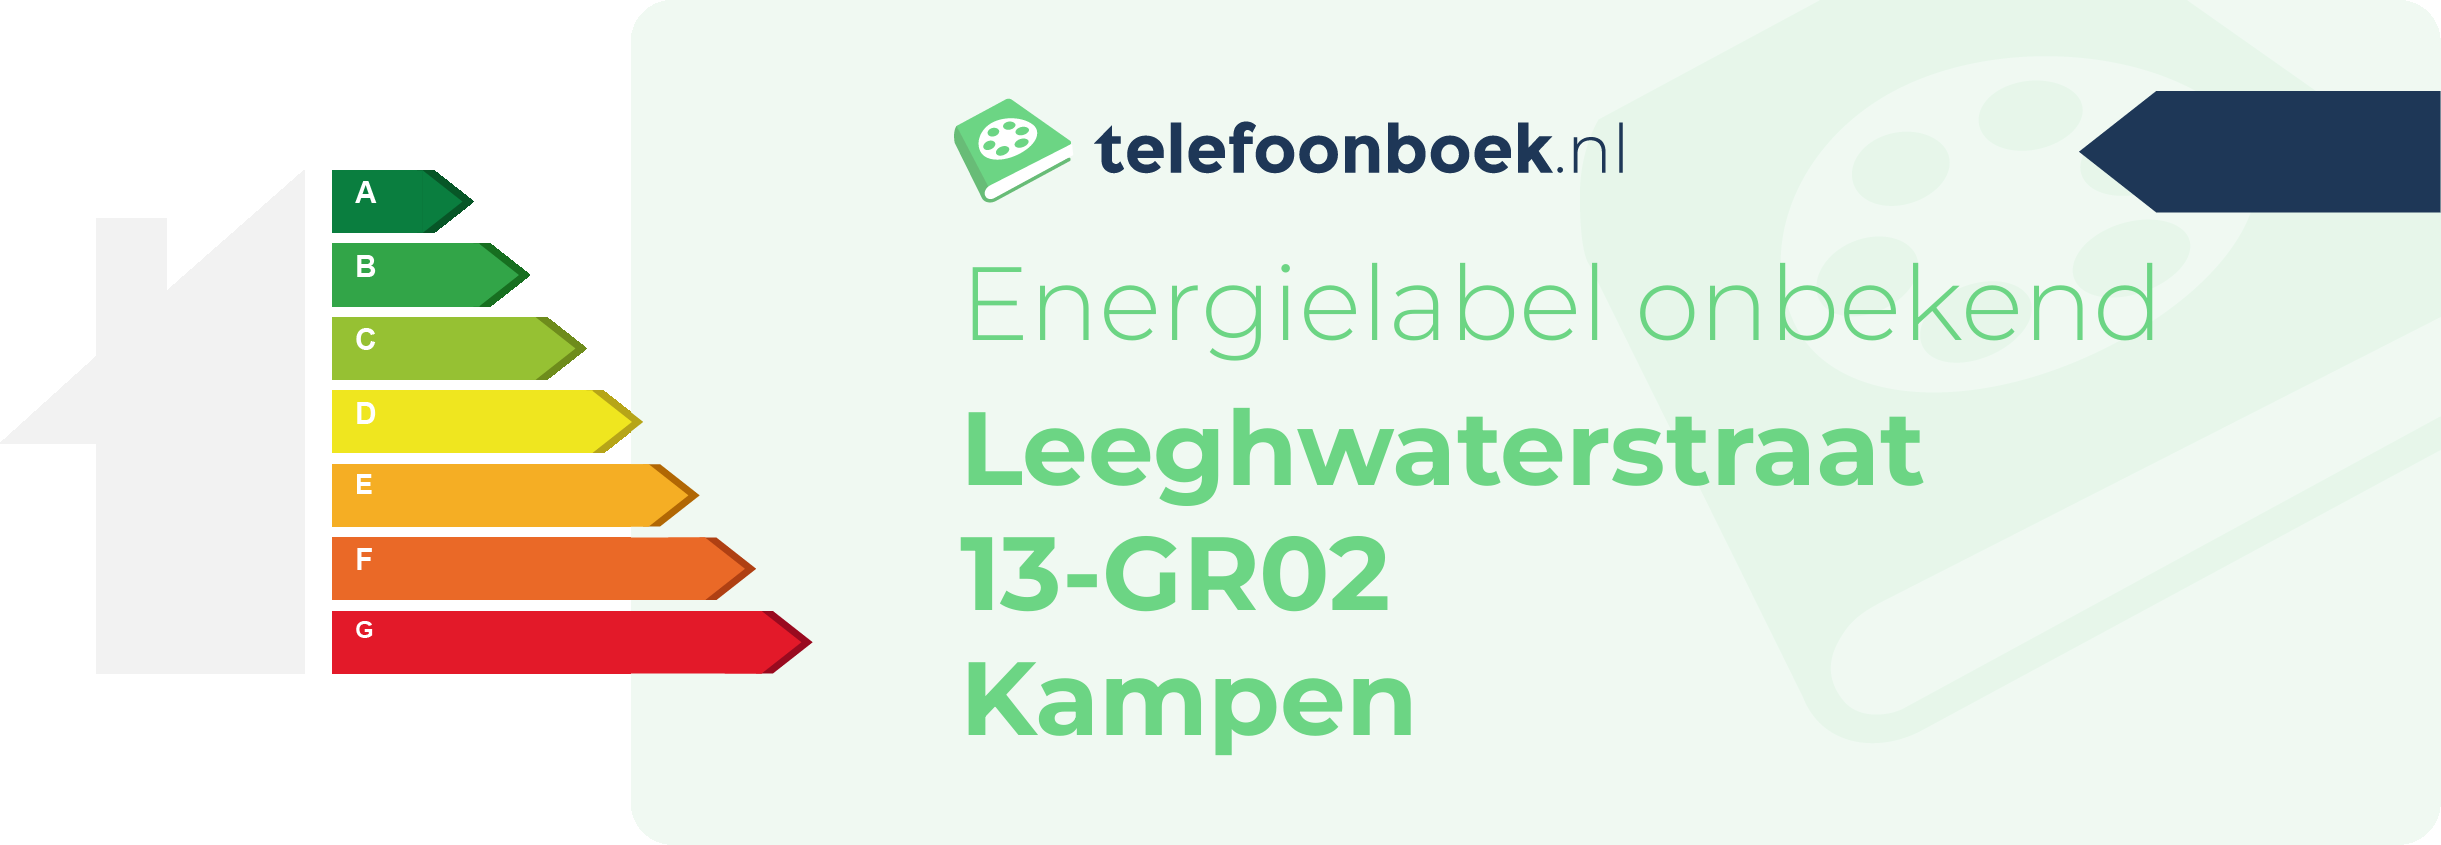 Energielabel Leeghwaterstraat 13-GR02 Kampen